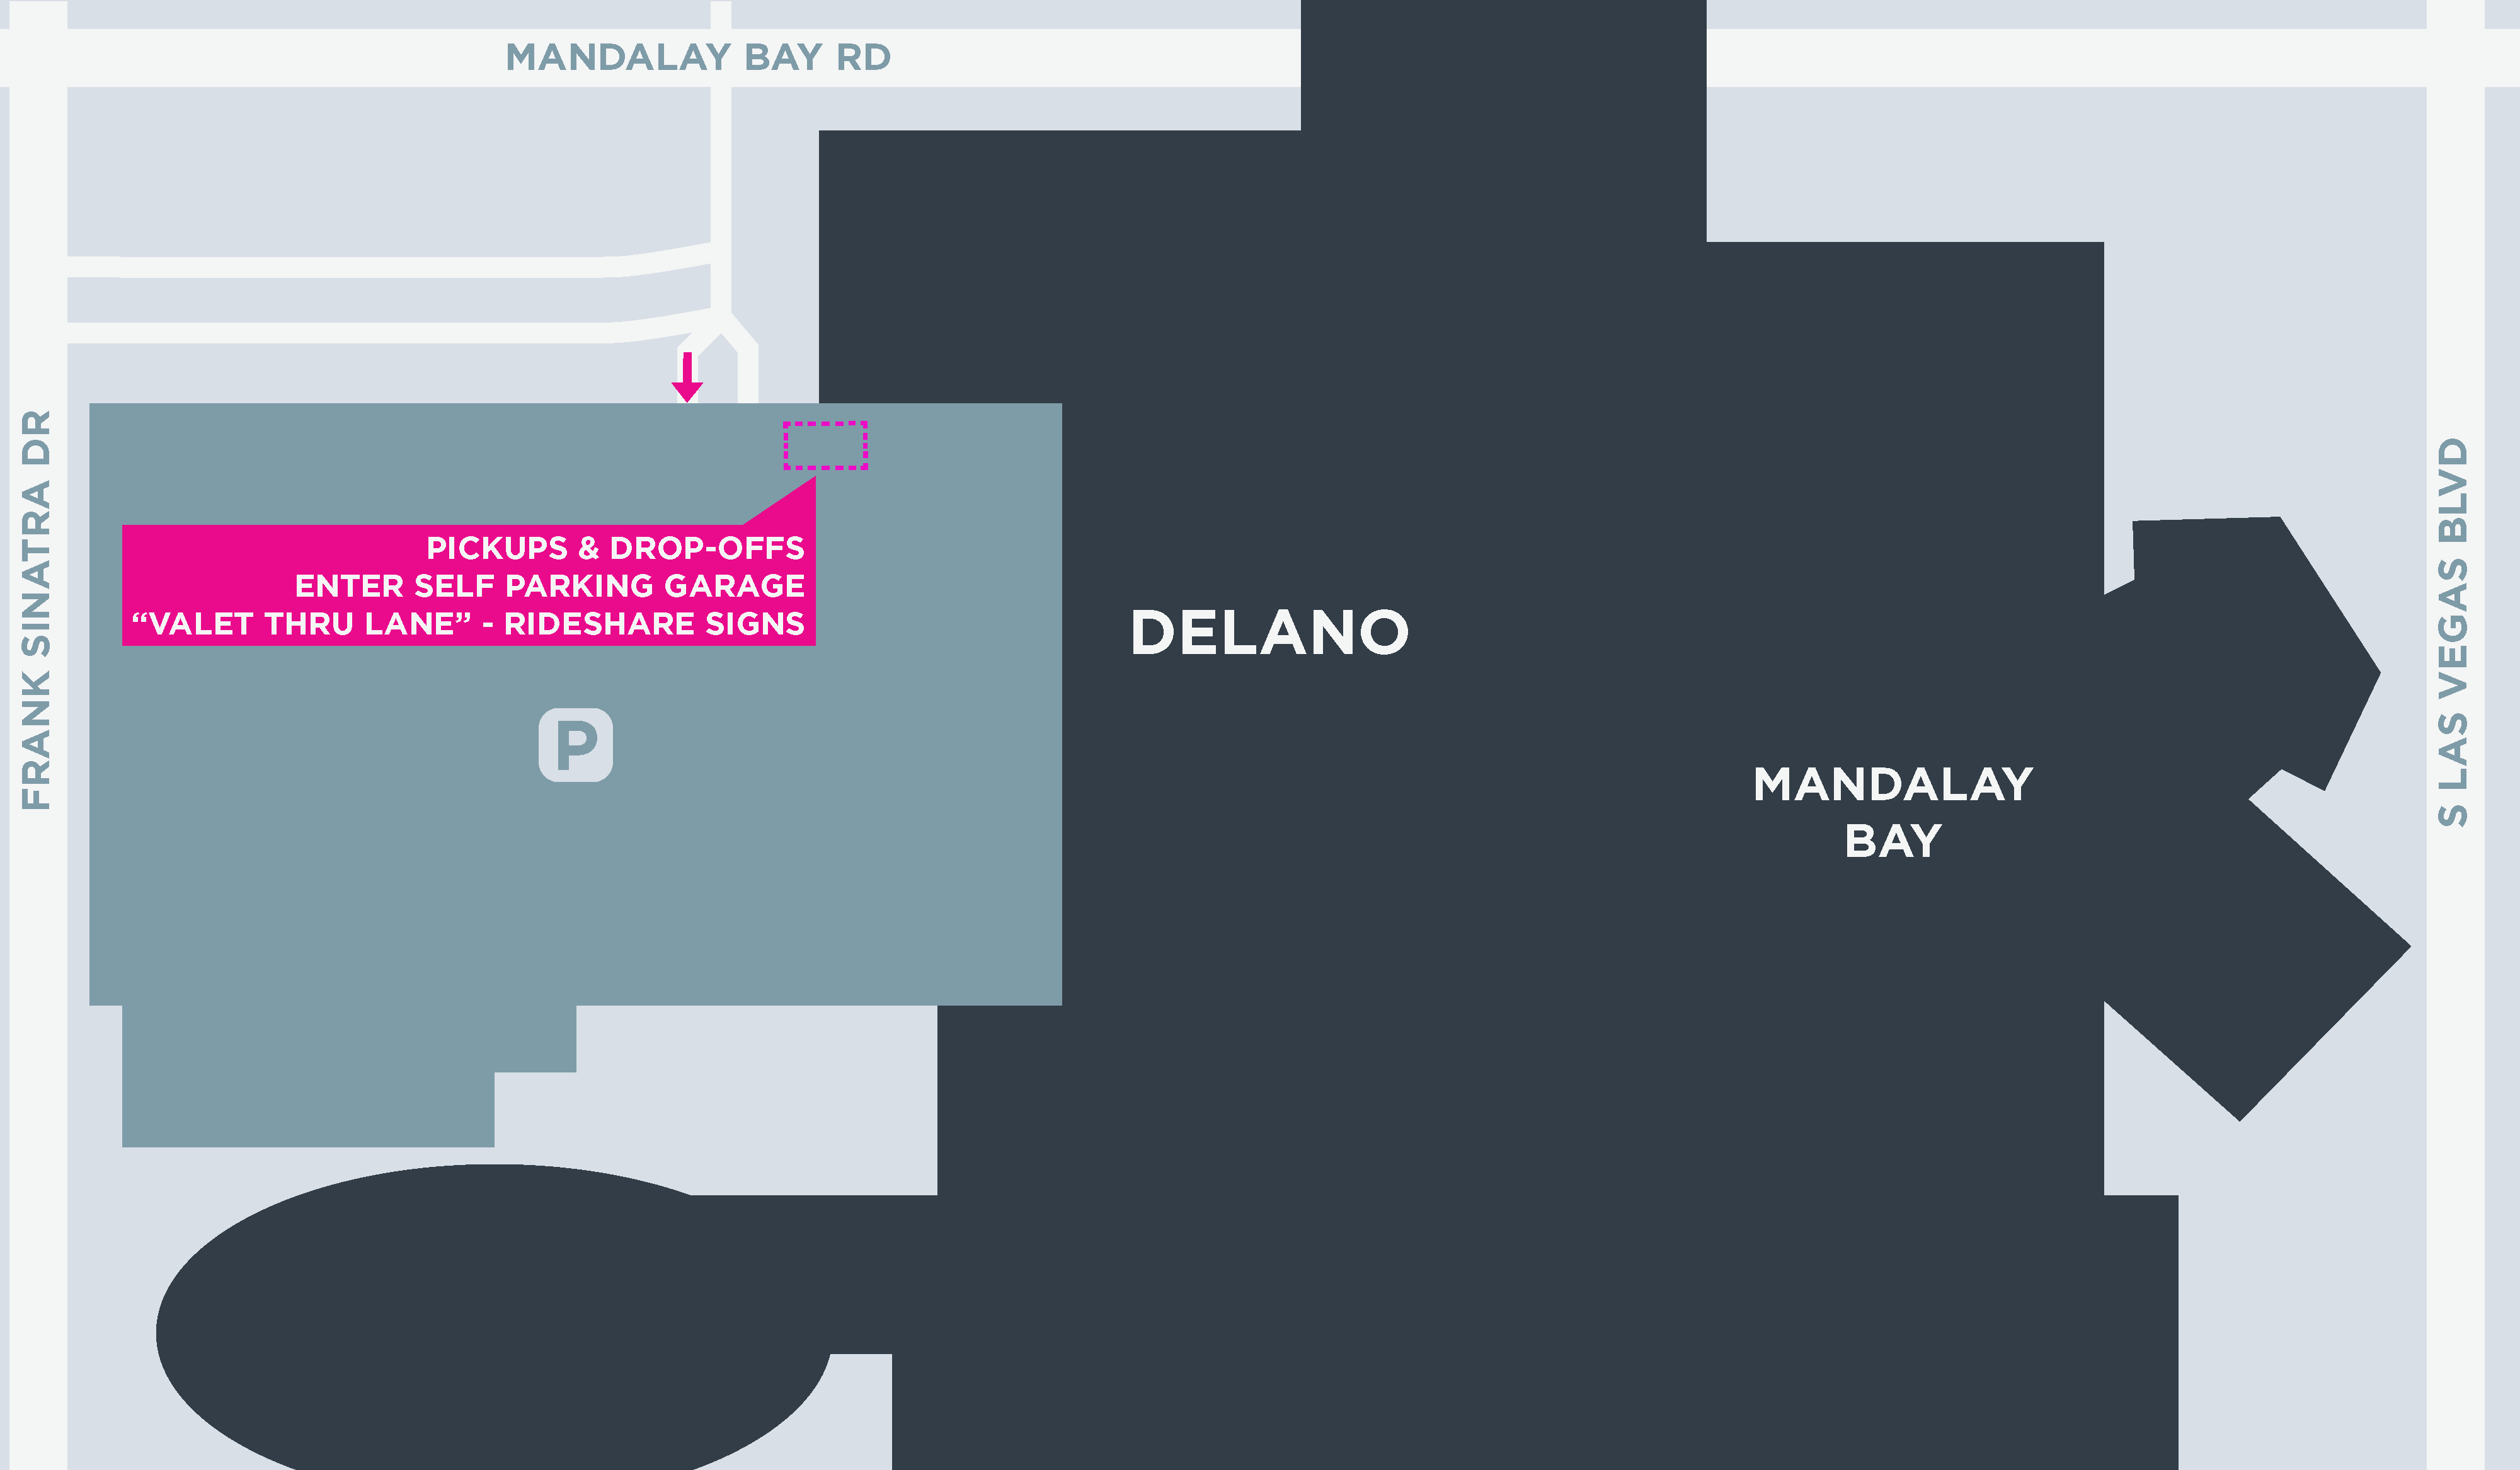 Esta imagem mostra um mapa do Delano, incluindo pontos de encontro e áreas de desembarque.